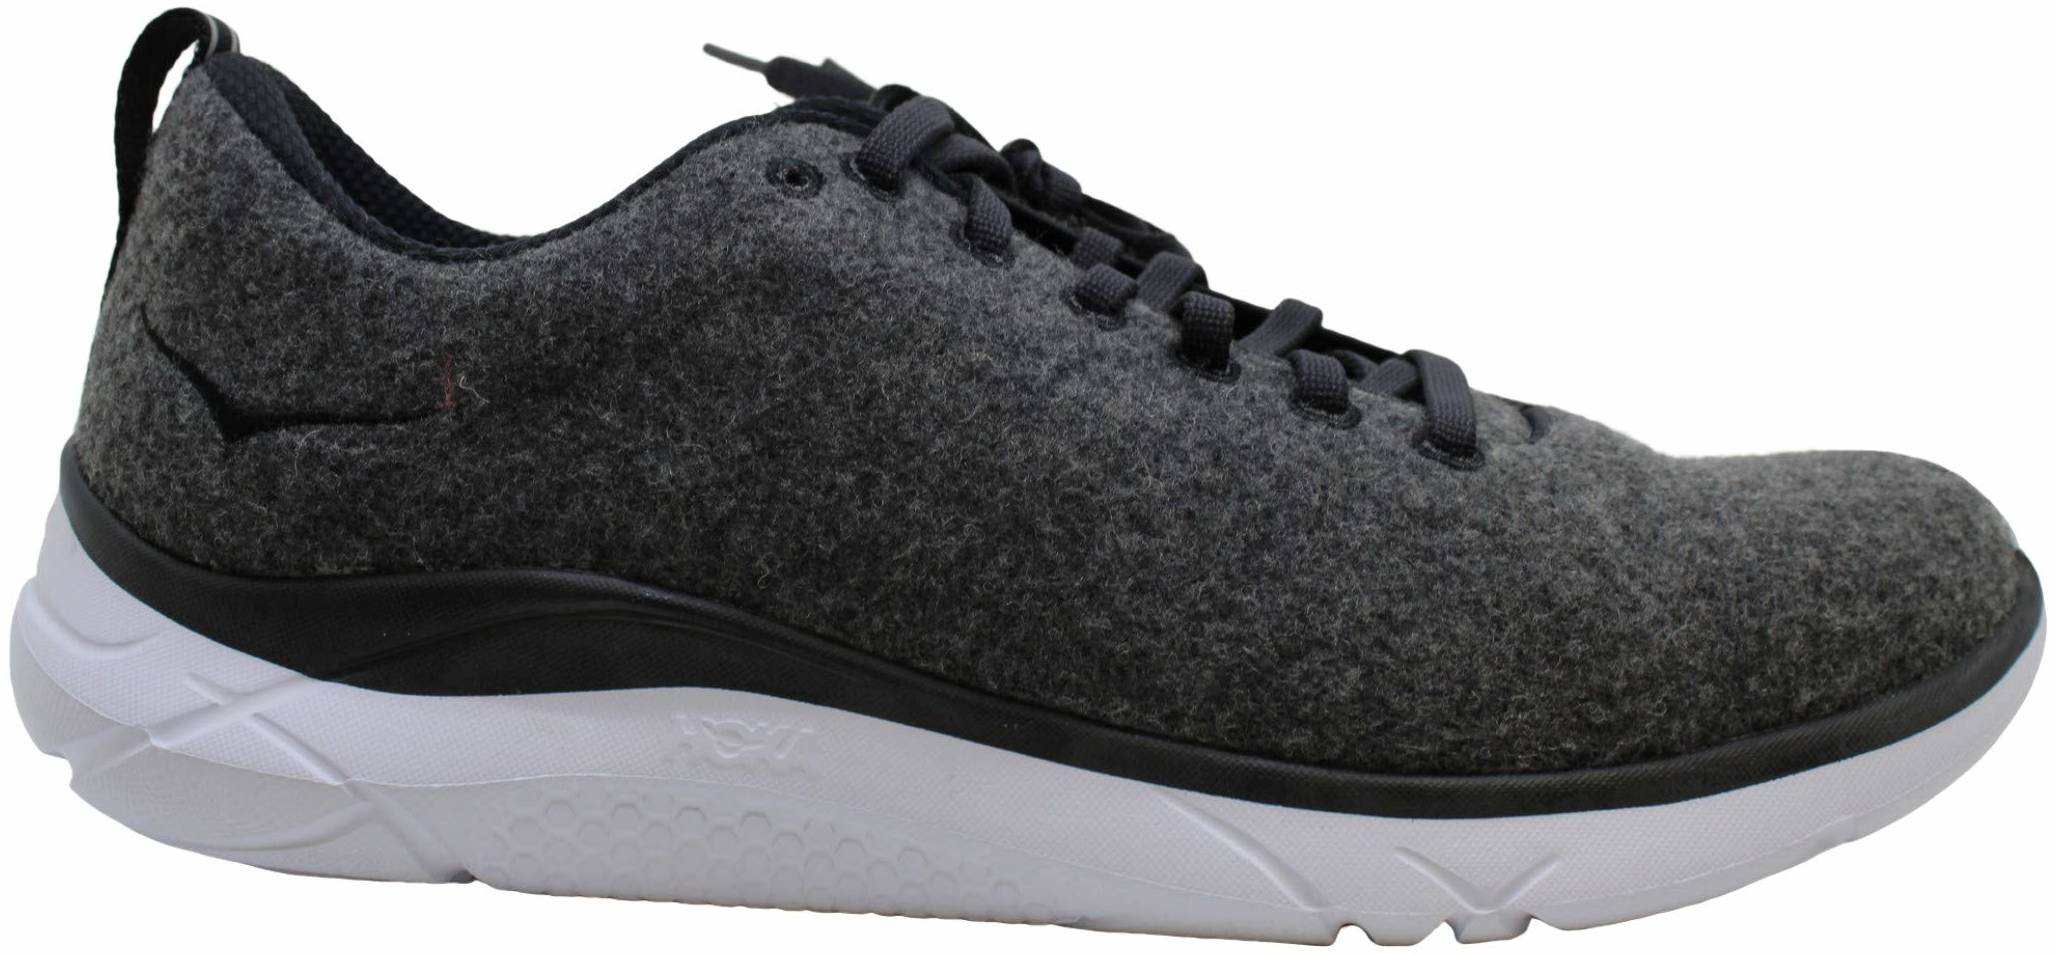 grey wool sneakers